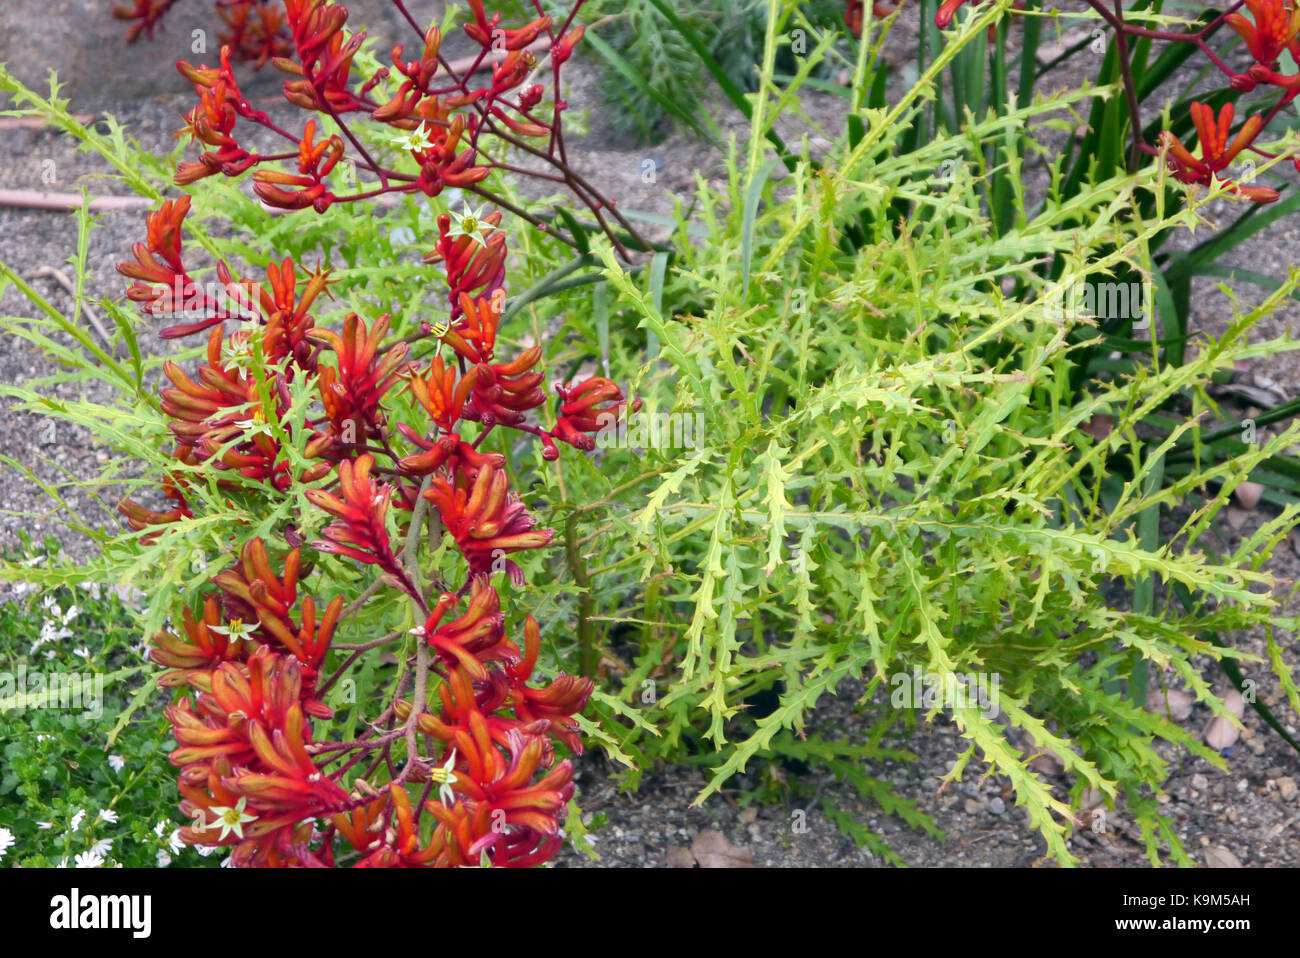 Die roten Känguru-Paw Flowers (Anigozanthos Rufus) „Bush Endeavour“ aus Australien werden beim Eden Project, Cornwall, England, Großbritannien, angebaut. Stockfoto